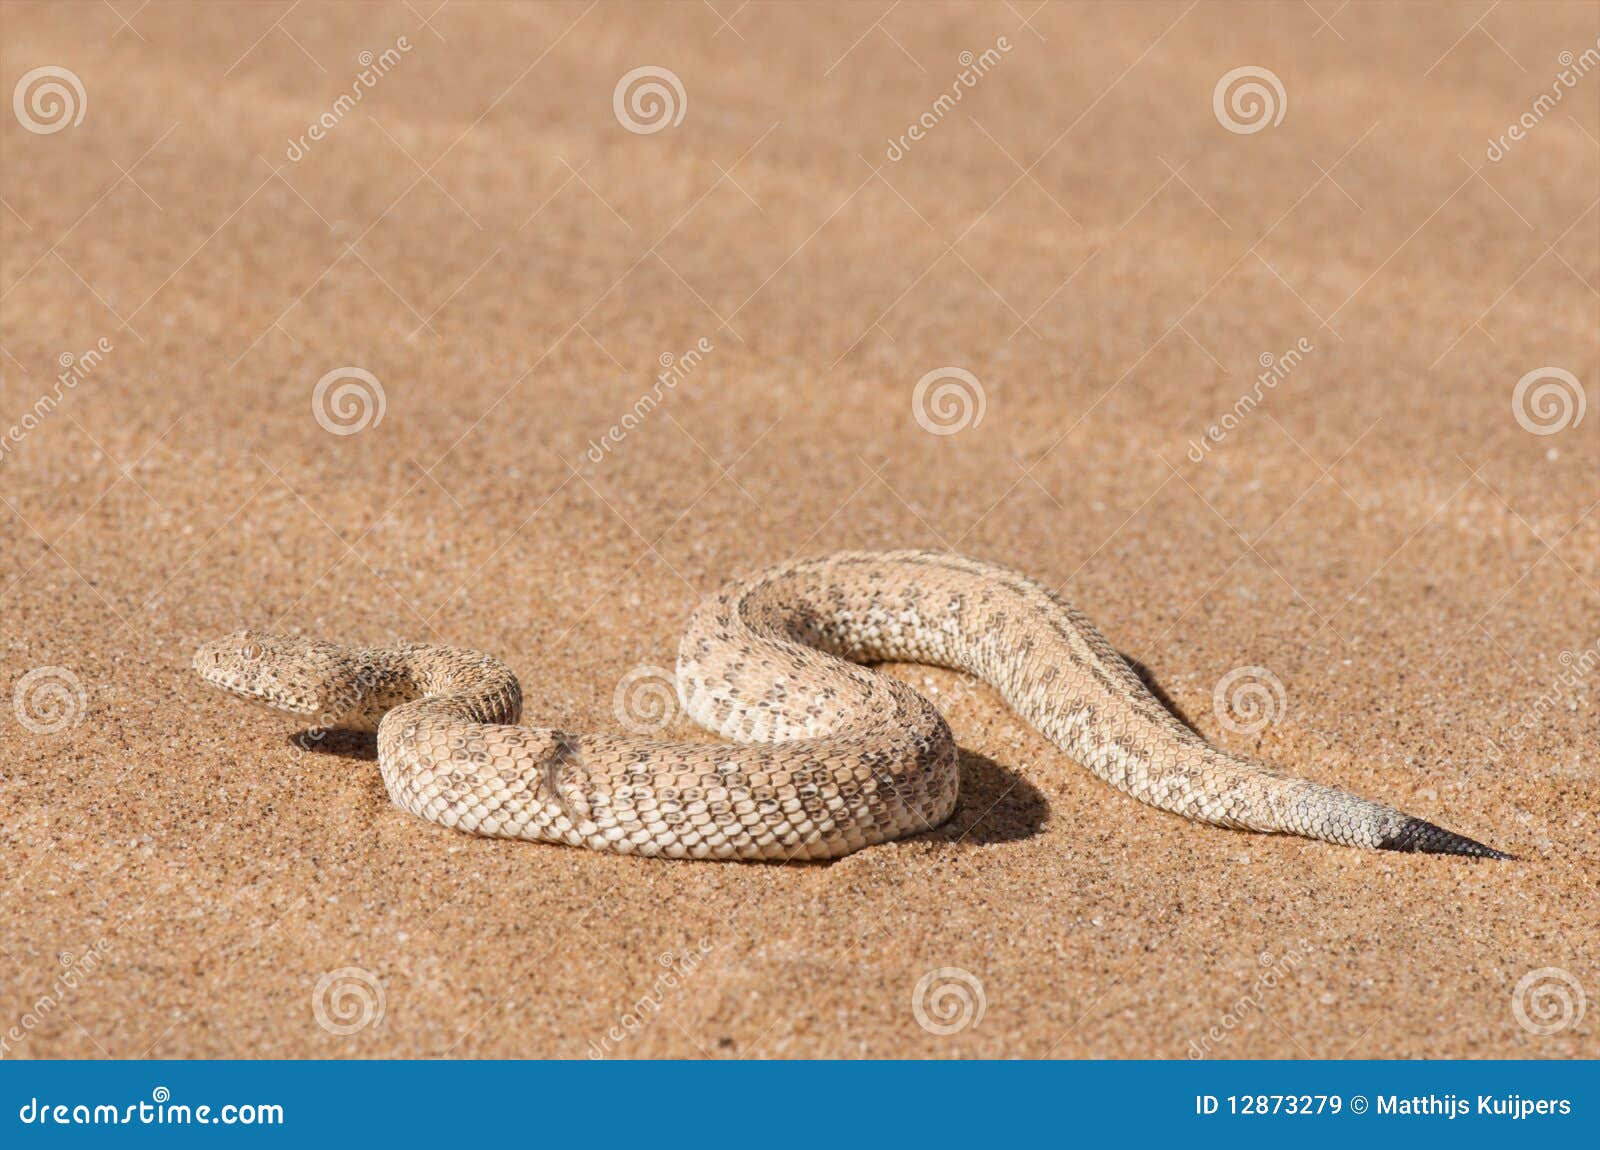 peringuey's sand adder